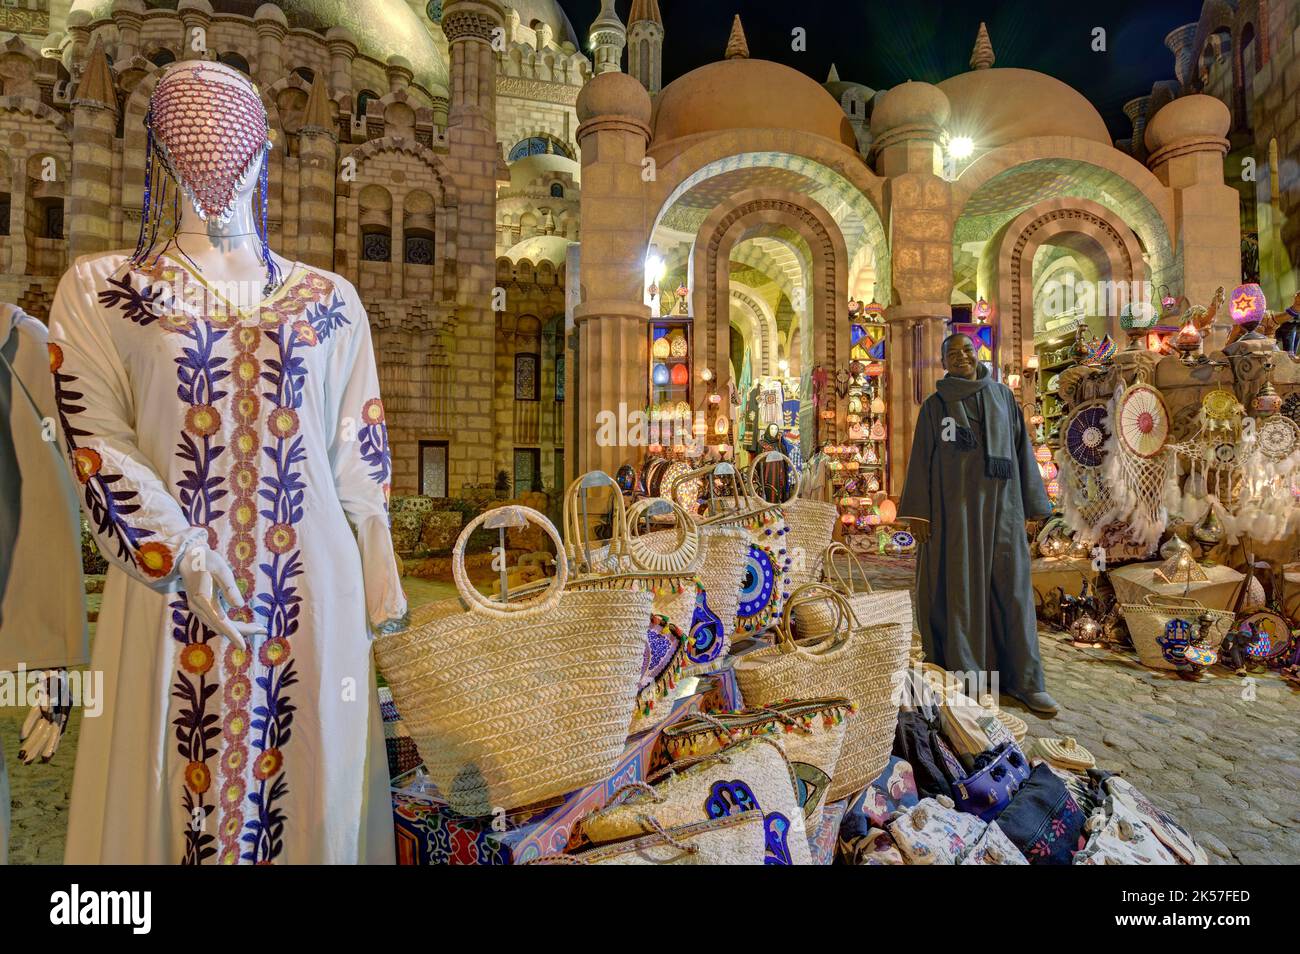 Egypte, Sinaï, Charm-el-Cheikh, quartier du Vieux marché, boutique touristique Banque D'Images